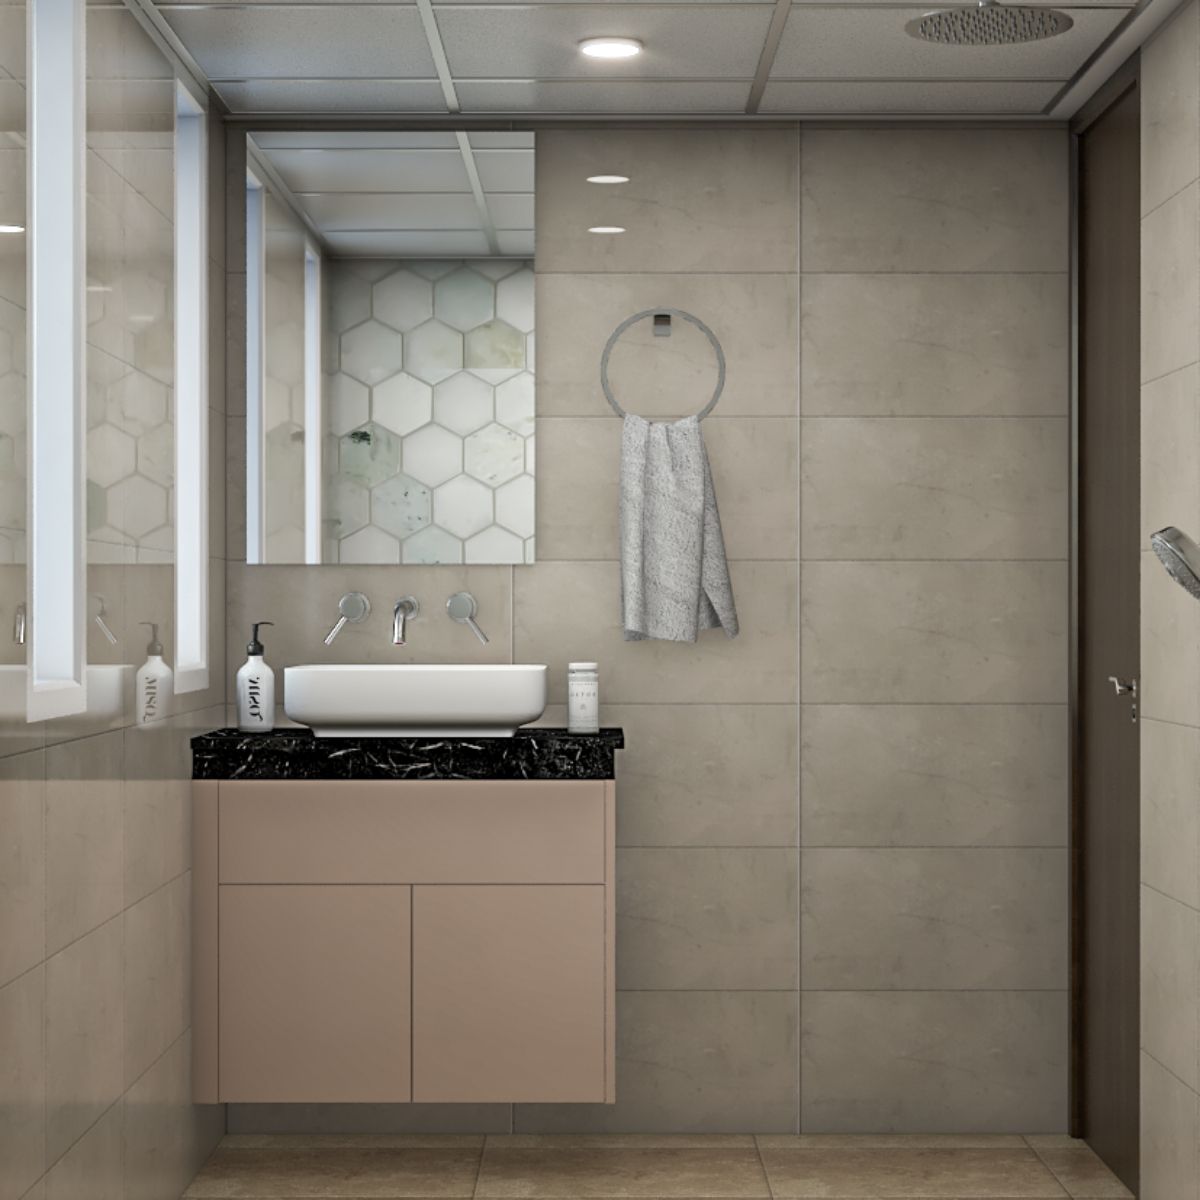 Contemporary Small Bathroom Design With Hexagonal Wall Tiles